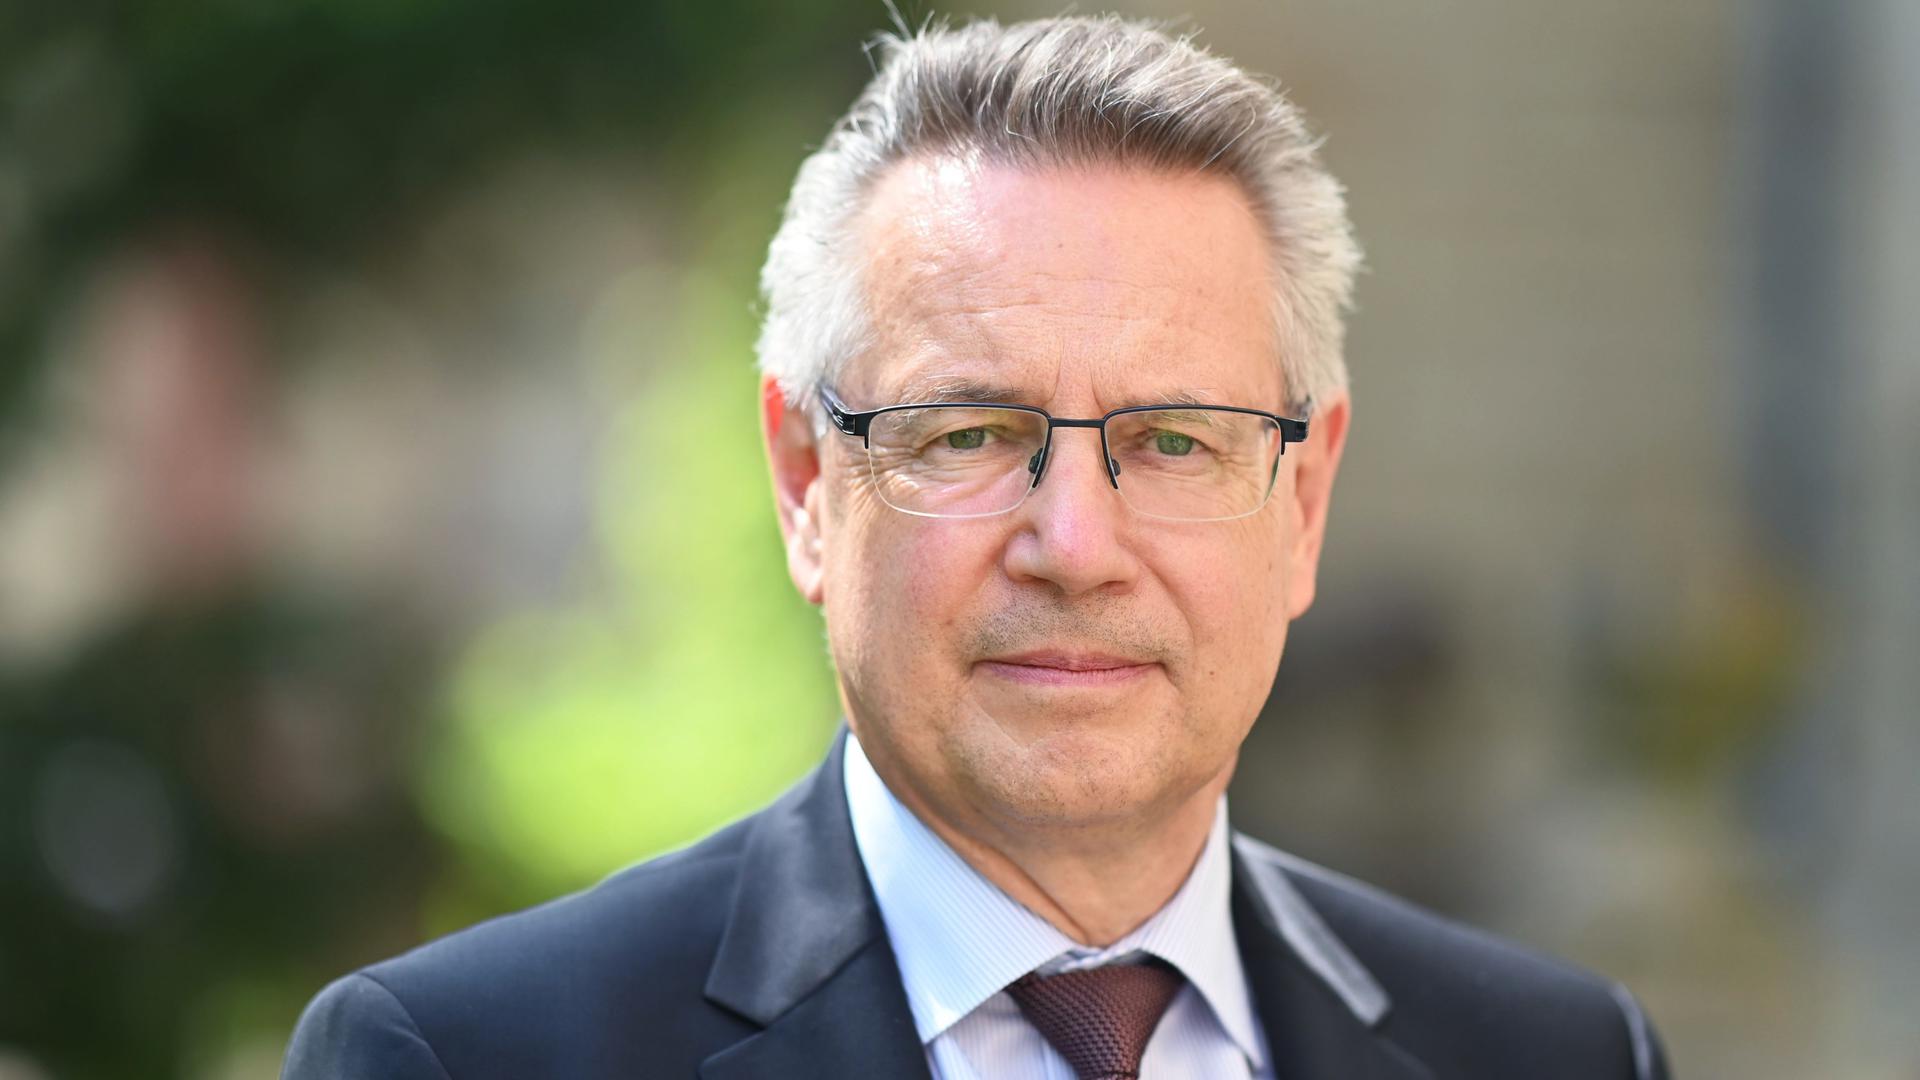 Alexander Riedel, Präsident des Oberlandesgericht Karlsruhe, steht vor dem Gericht. Um im Wettbewerb zu bestehen, müssen sich die Gerichte in Deutschland nach seiner Einschätzung etwas einfallen lassen. (zu dpa «Justiz braucht wegen wachsenden Wettbewerbs neue Ideen») +++ dpa-Bildfunk +++